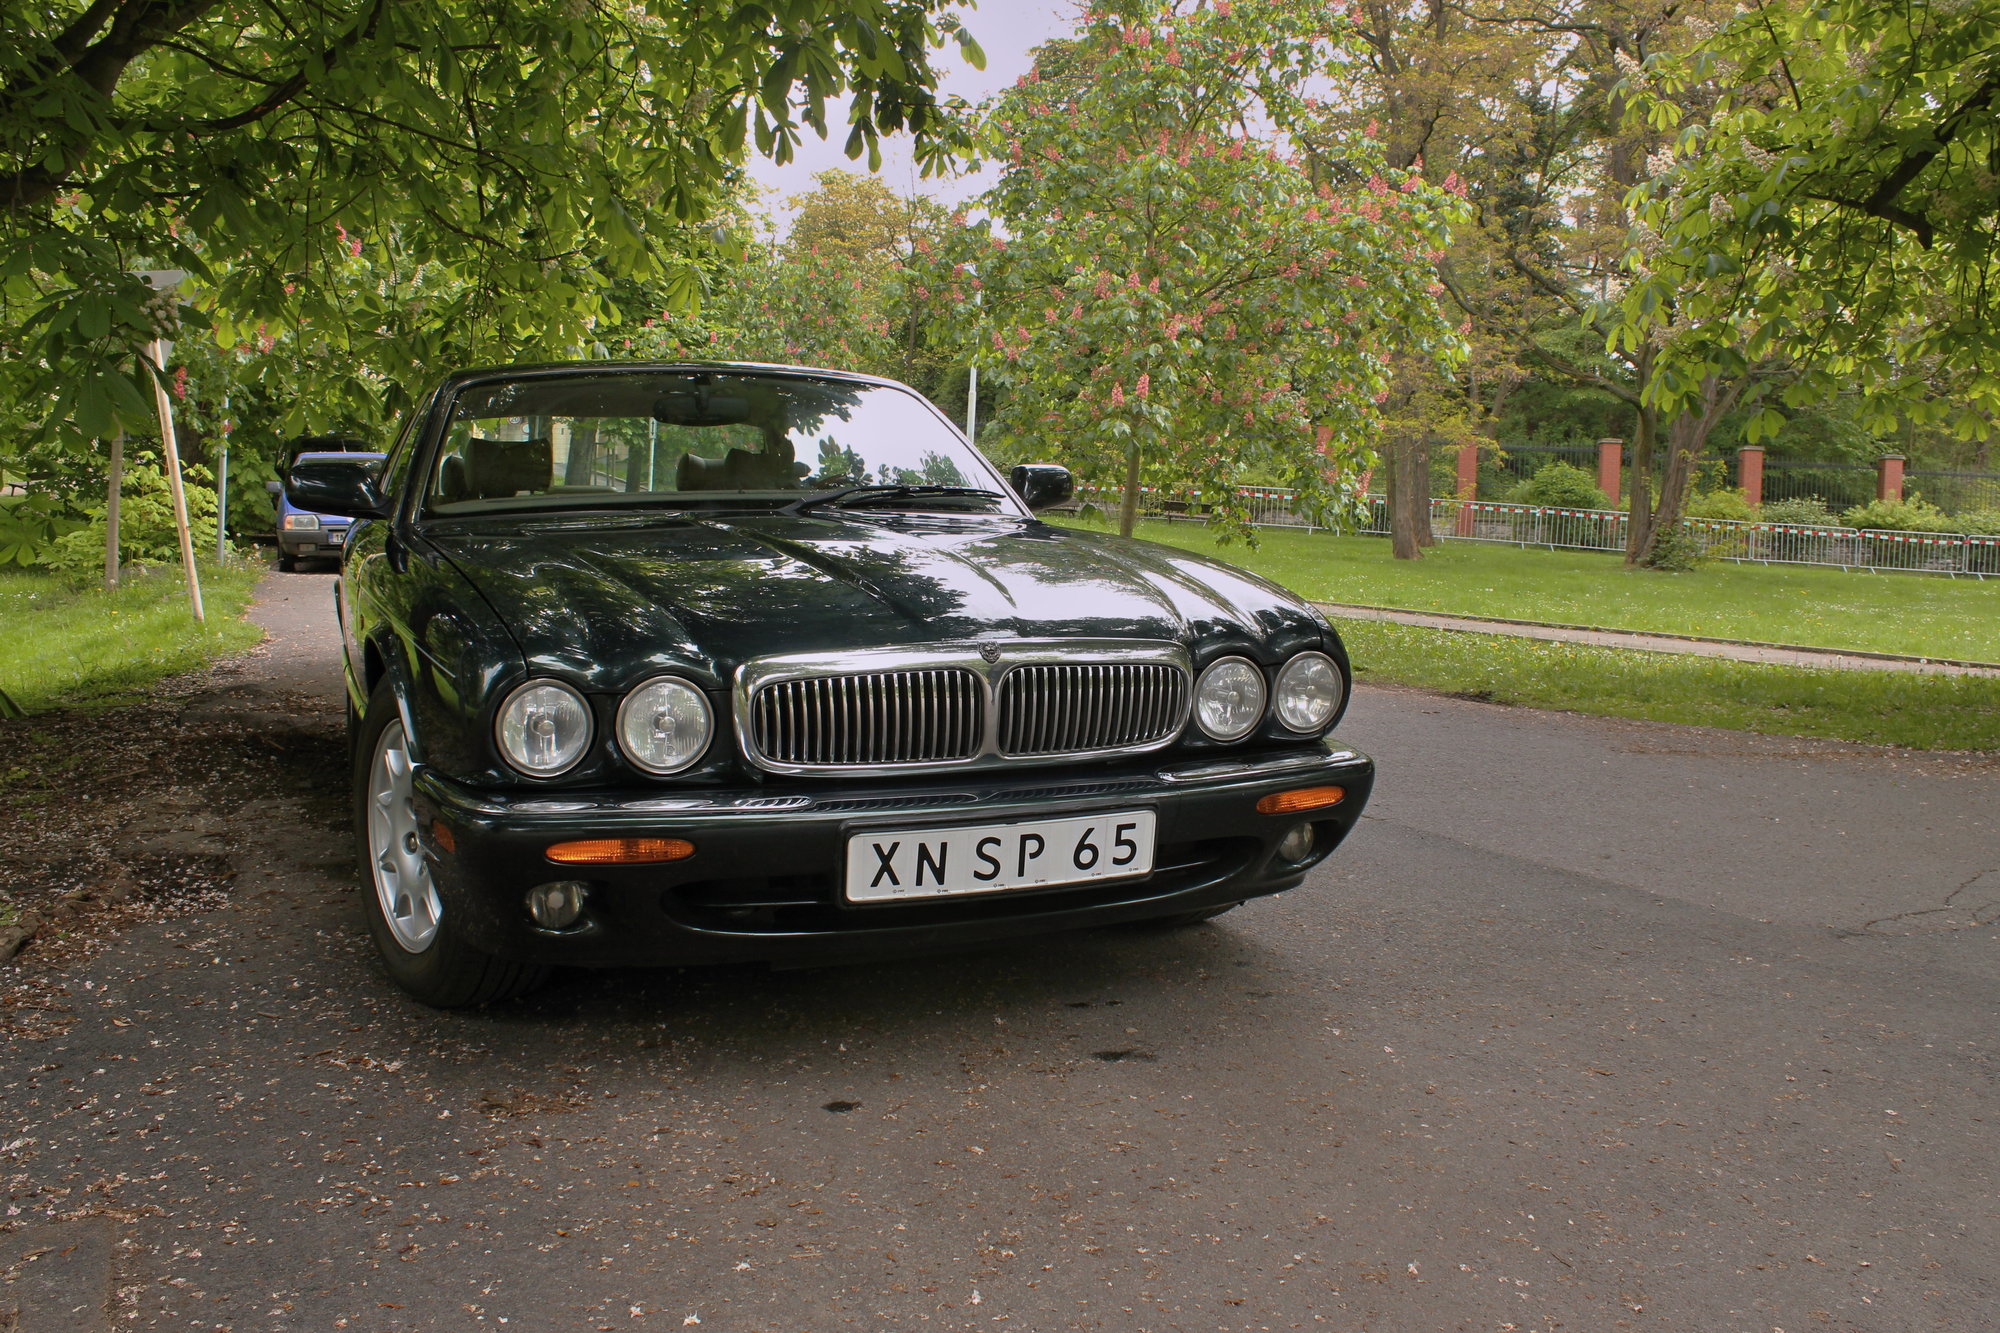 Jaguar XJ (x308) Sovereign